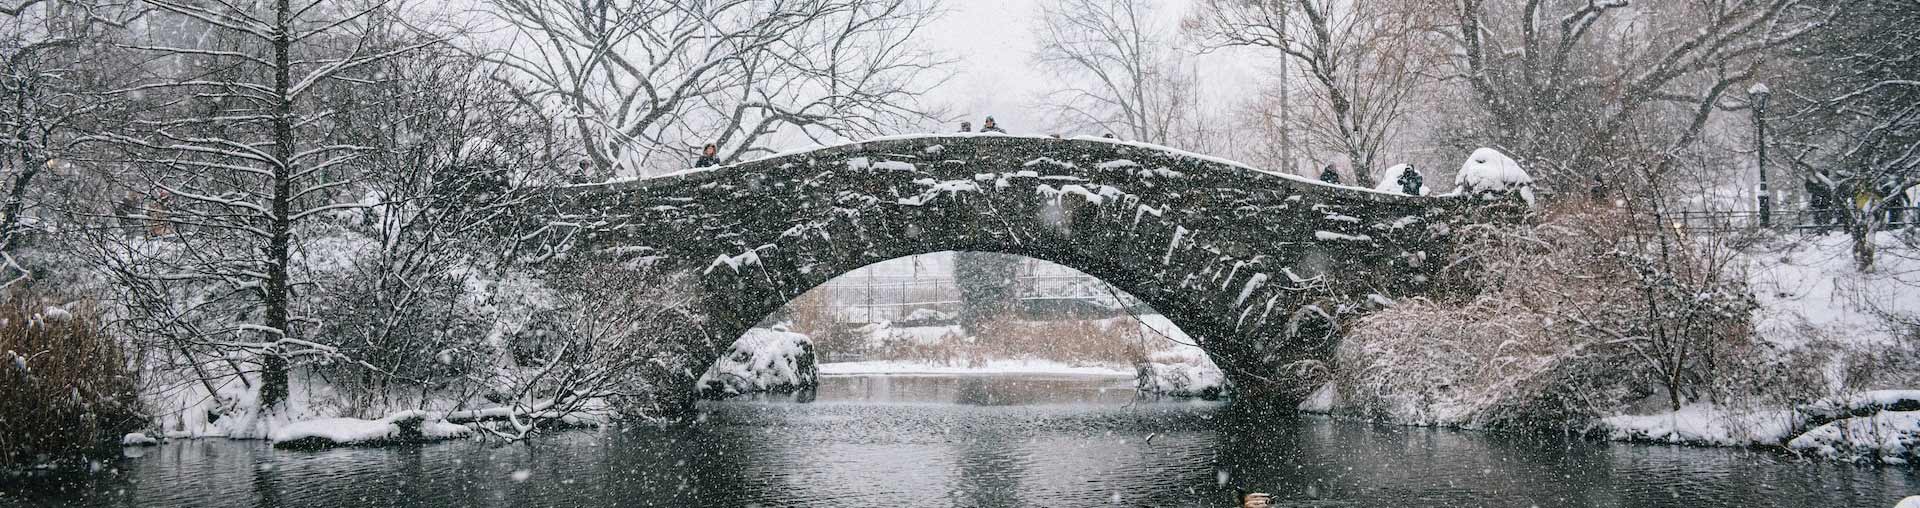 Центральный парк Нью-Йорка в снегу с каменным мостом на заднем плане